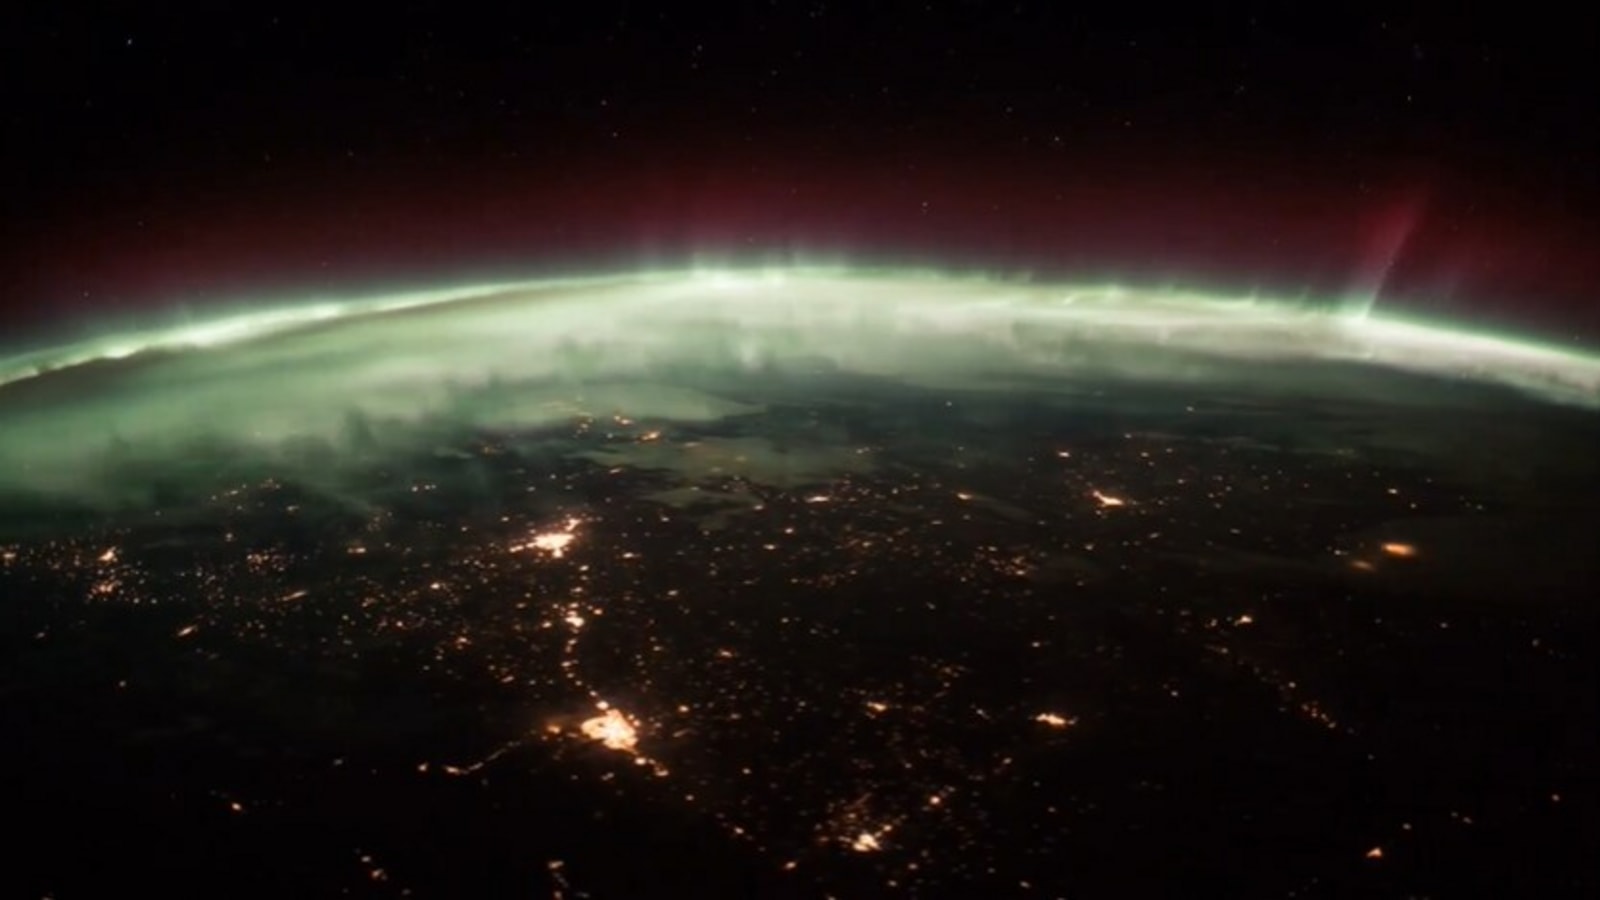 tańcząca zorza polarna z Międzynarodowej Stacji Kosmicznej;  Zobacz klip NASA